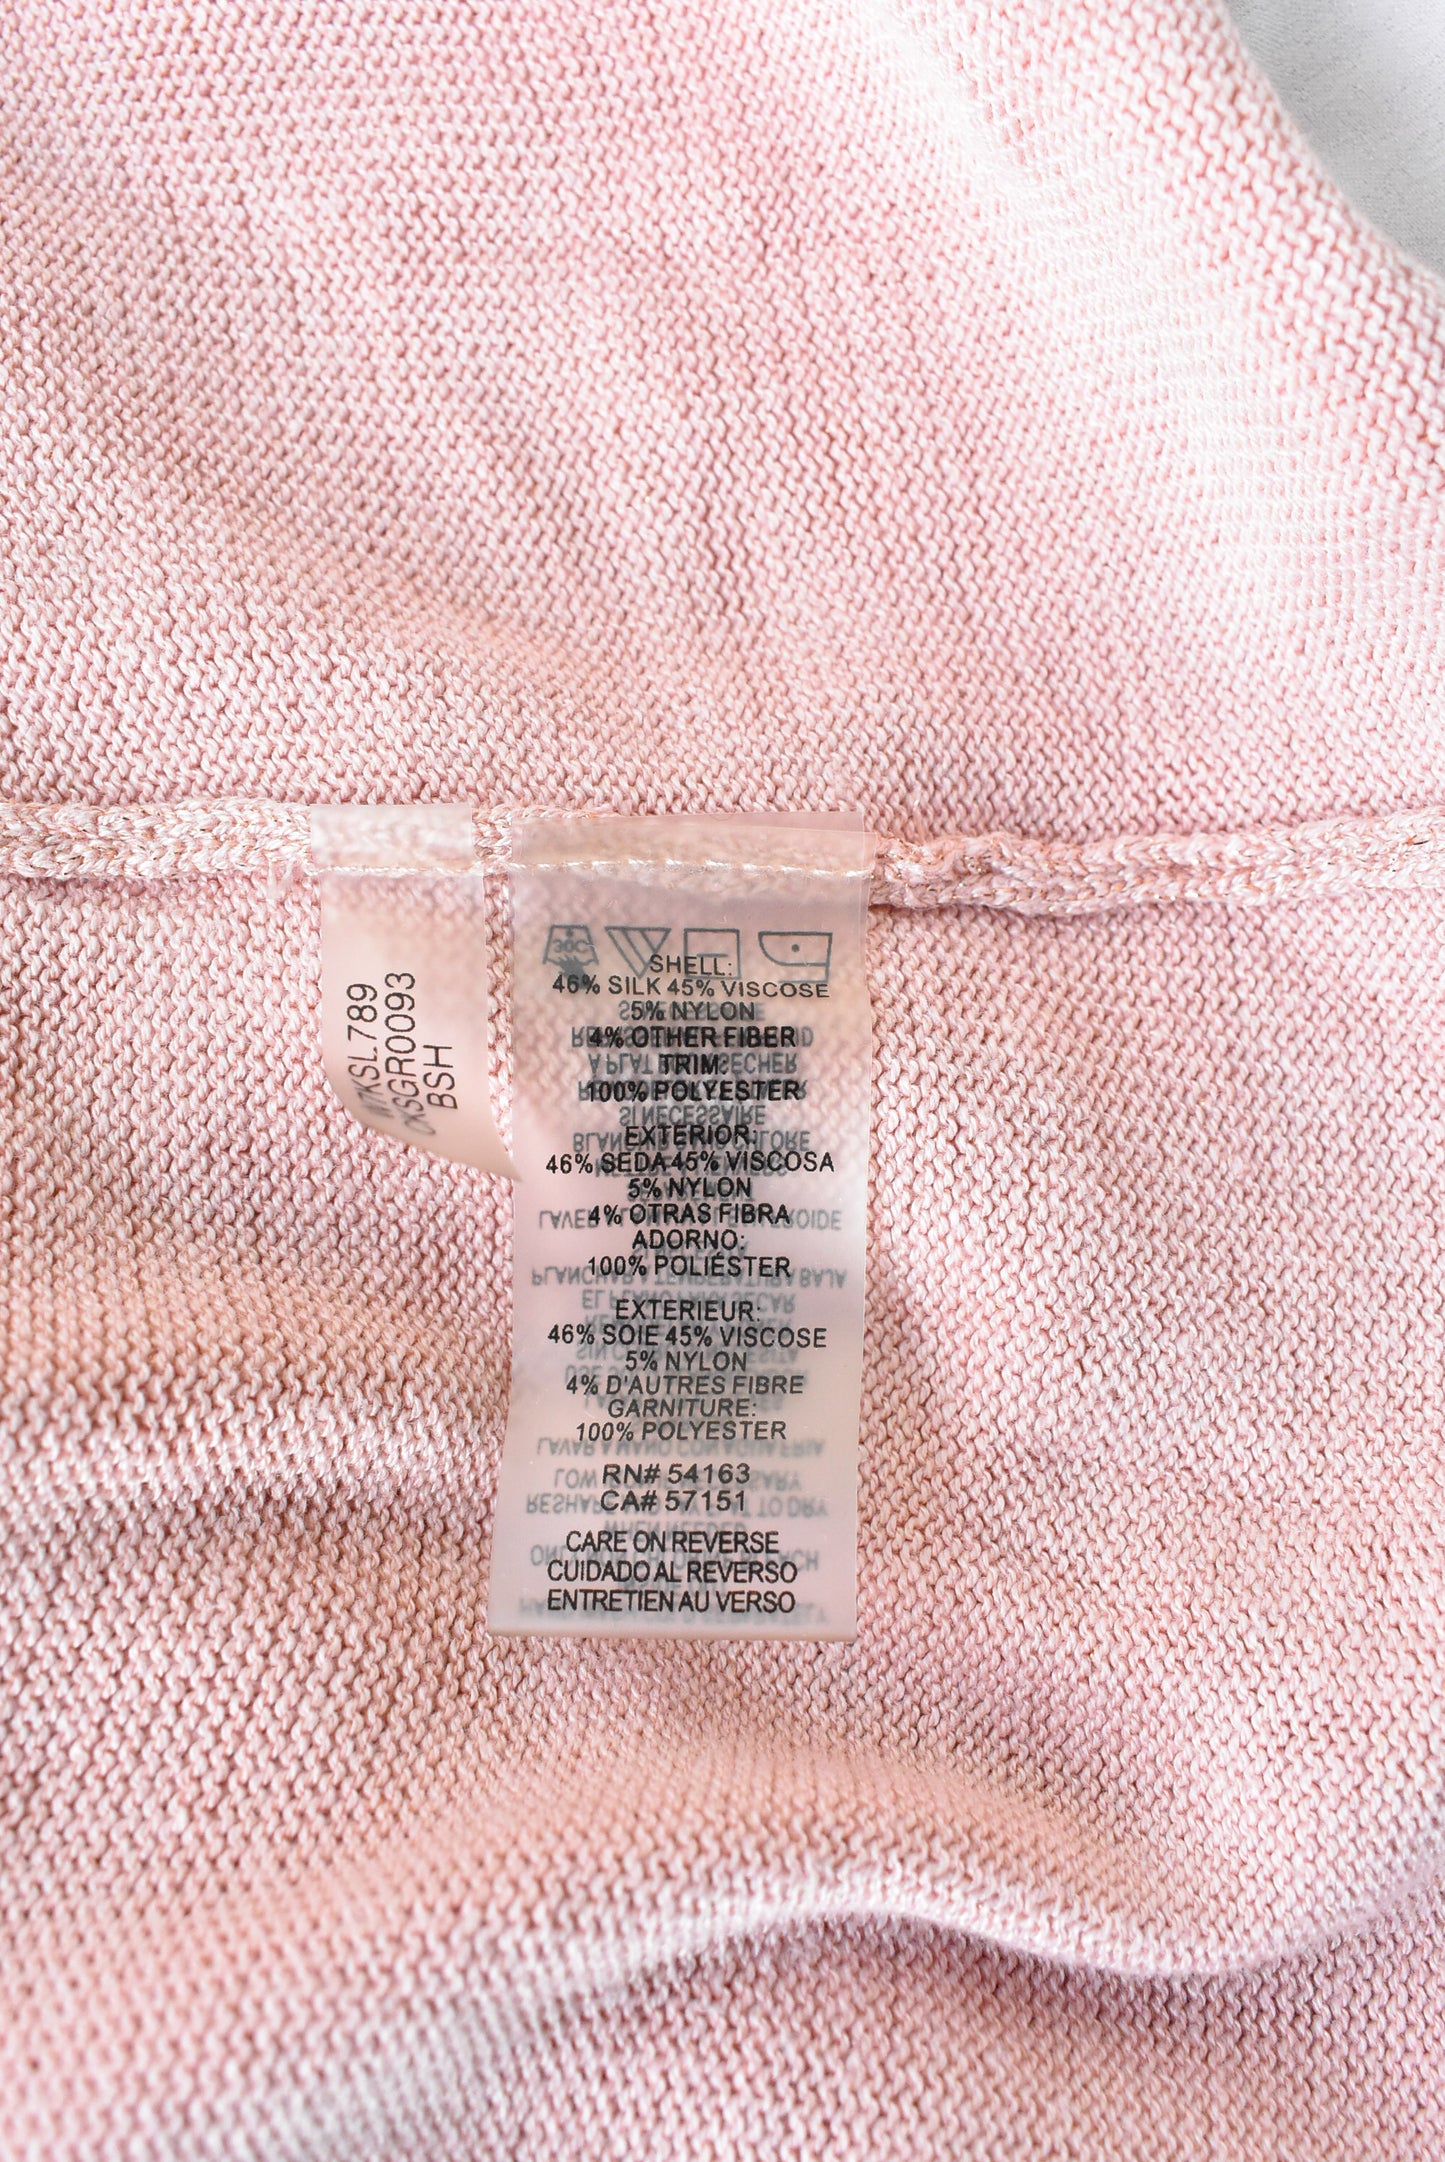 Calvin Klein pink silk knit top, size XL